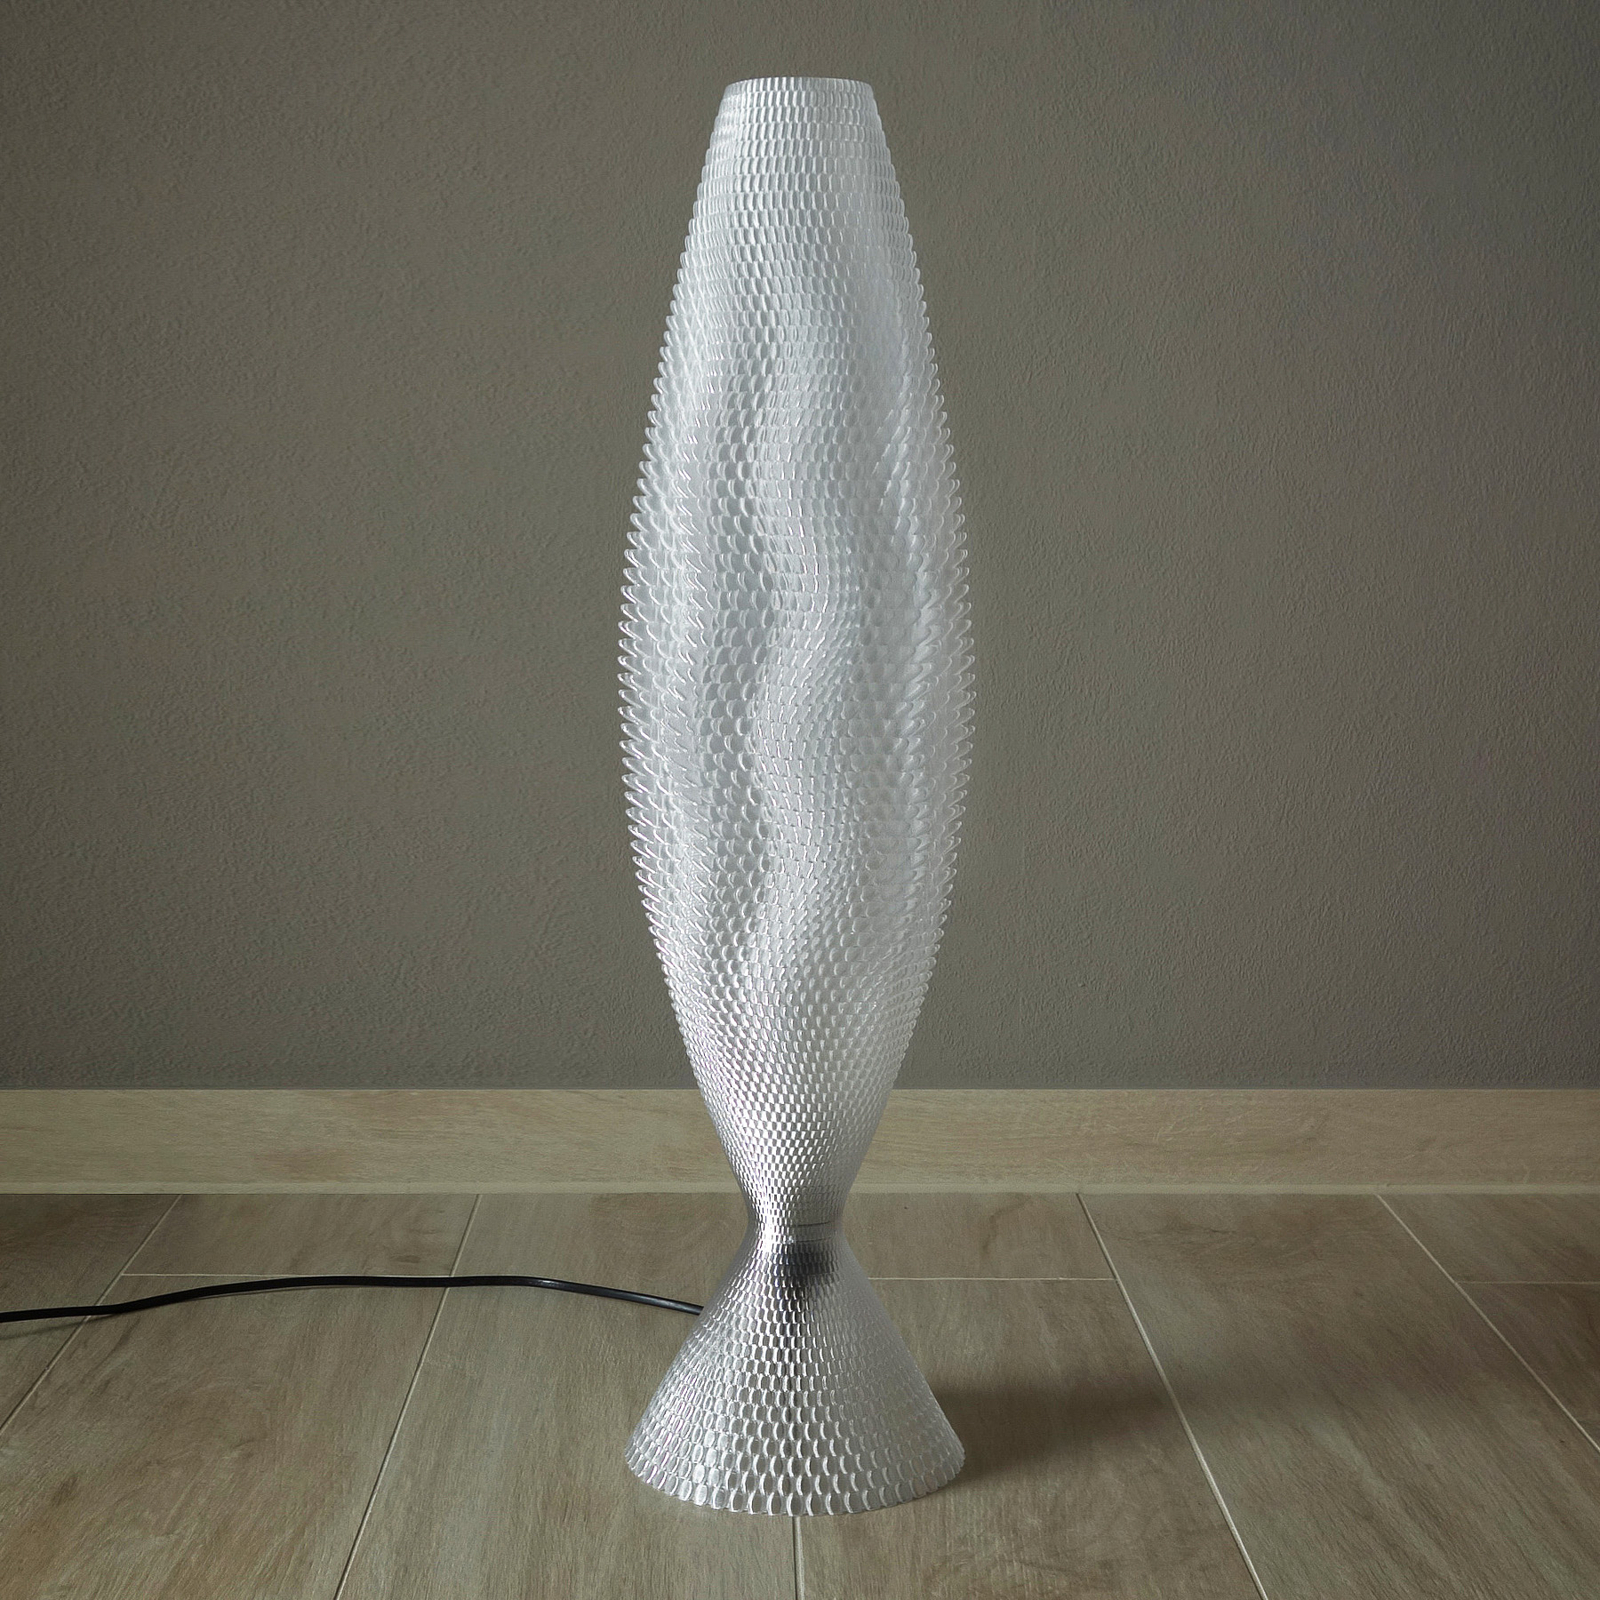 Koral bordlampe laget av biomateriale, krystallklar 65 cm